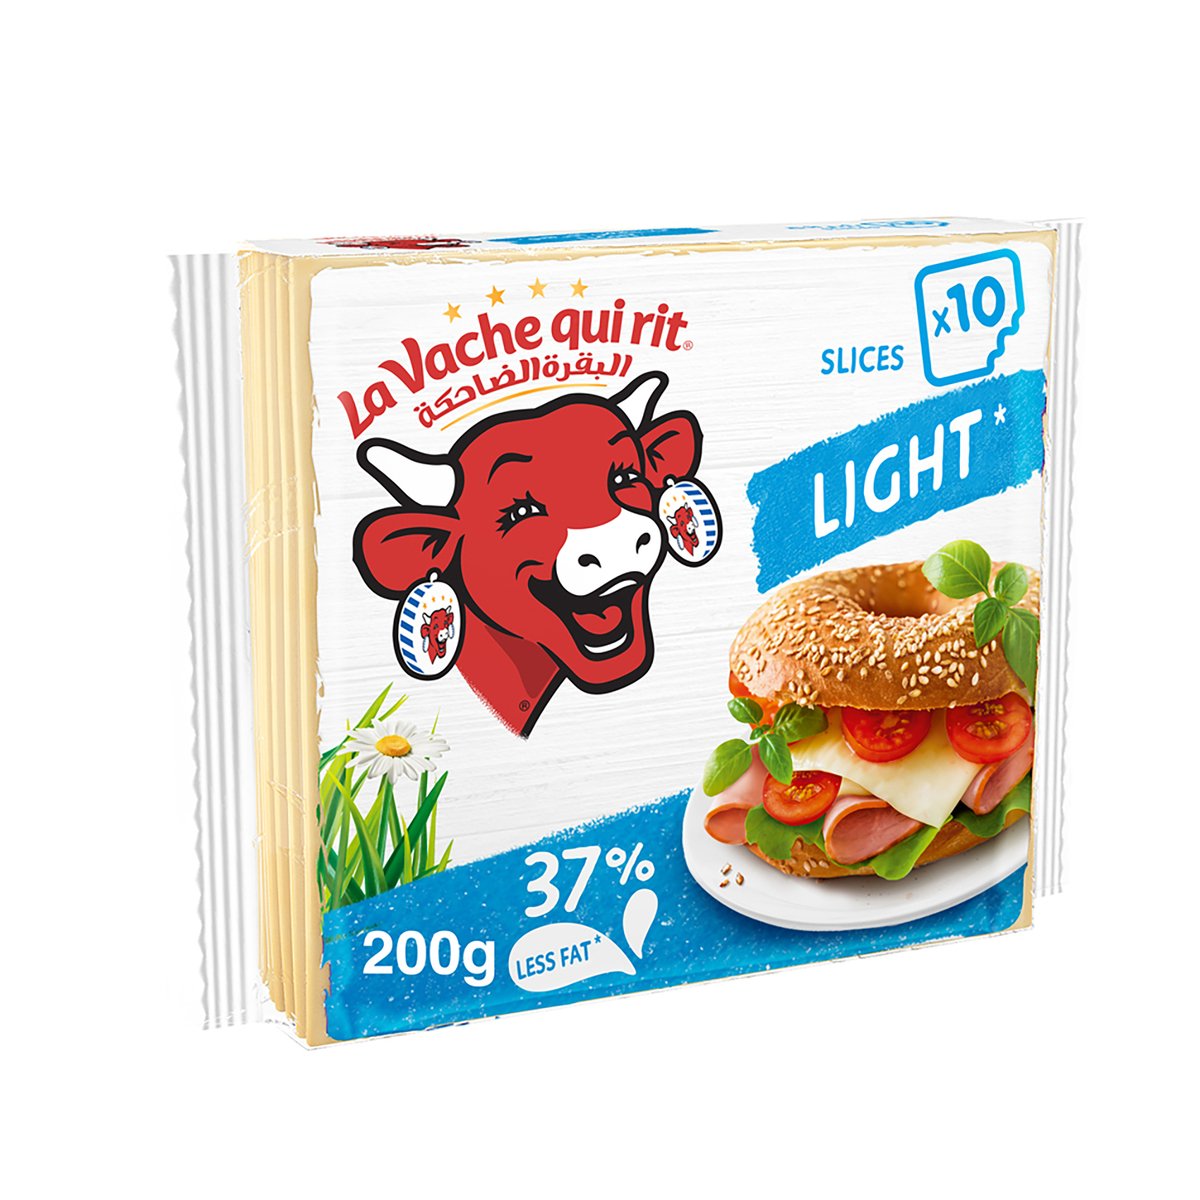 La Vache qui rit Light Cheese Slices 10 Slices 200 g